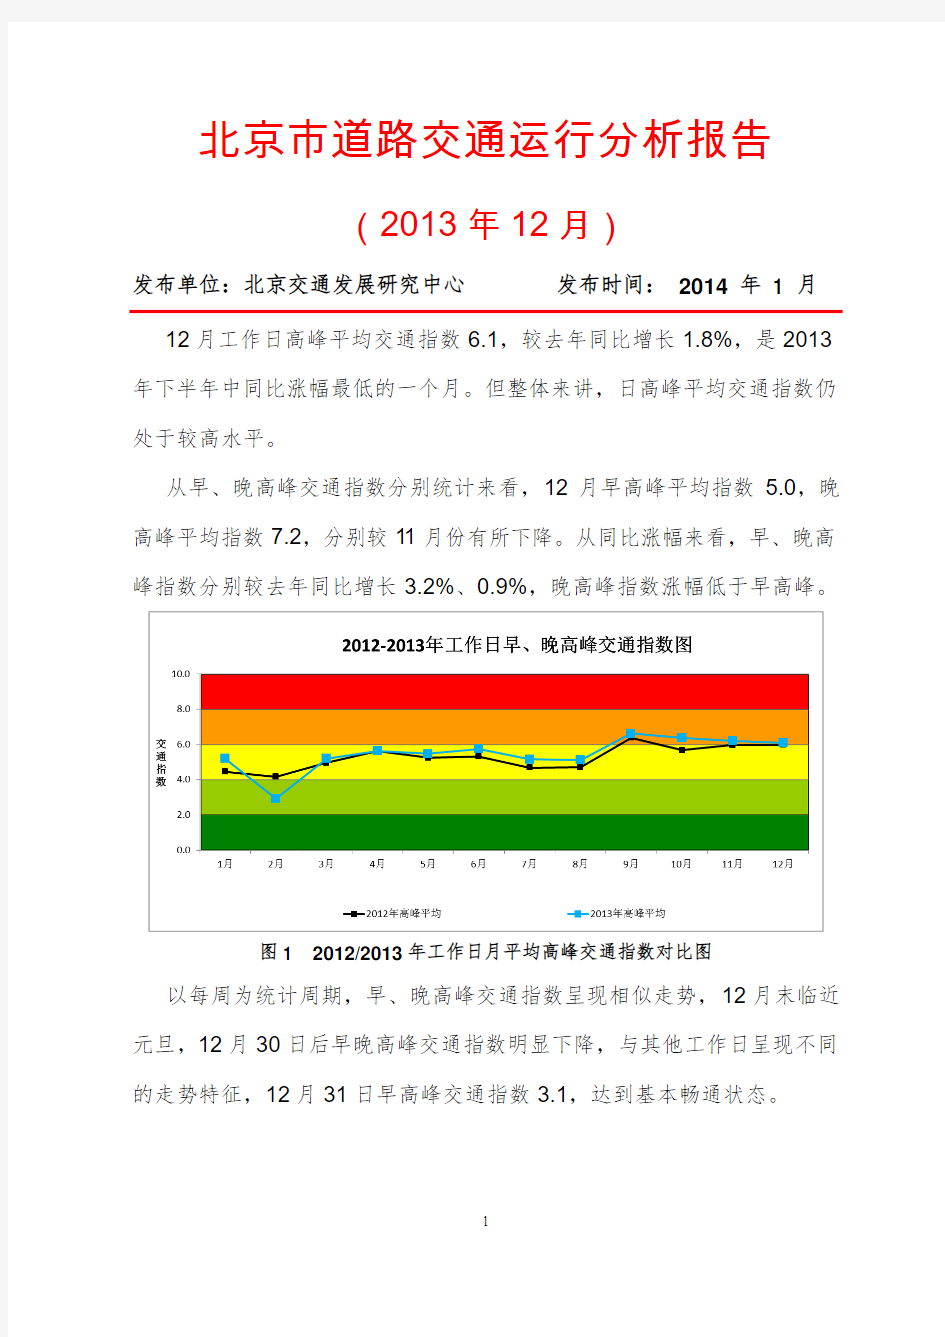 北京市道路交通运行分析报告